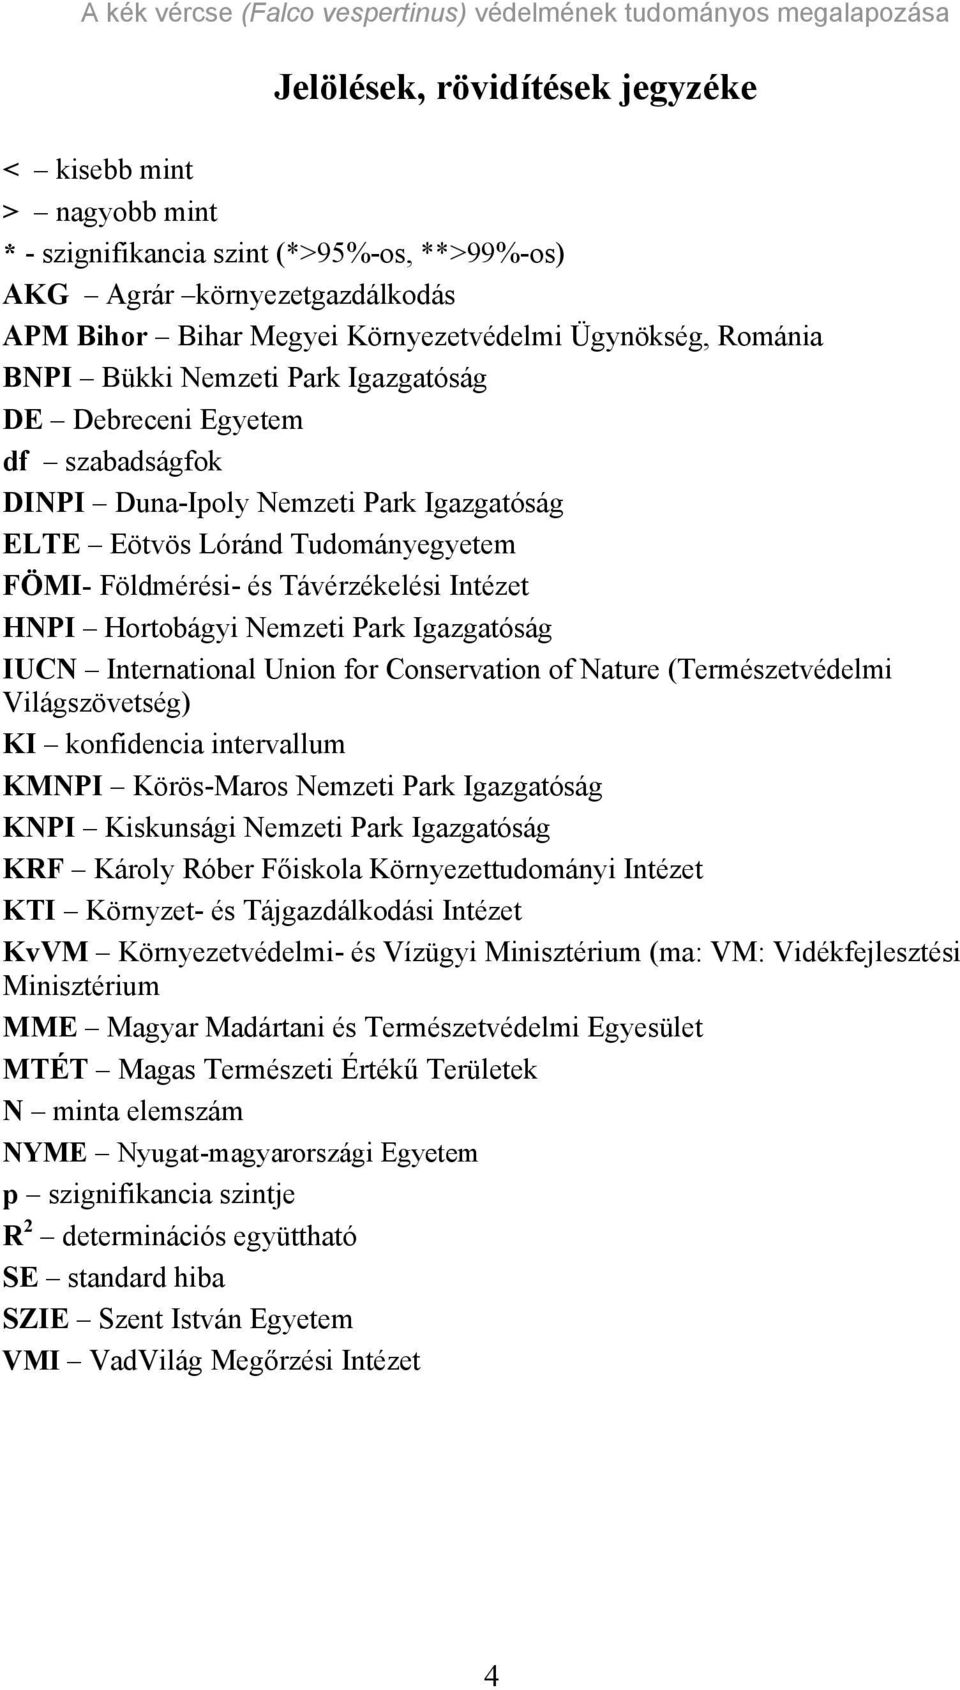 Hortobágyi Nemzeti Park Igazgatóság IUCN International Union for Conservation of Nature (Természetvédelmi Világszövetség) KI konfidencia intervallum KMNPI Körös-Maros Nemzeti Park Igazgatóság KNPI